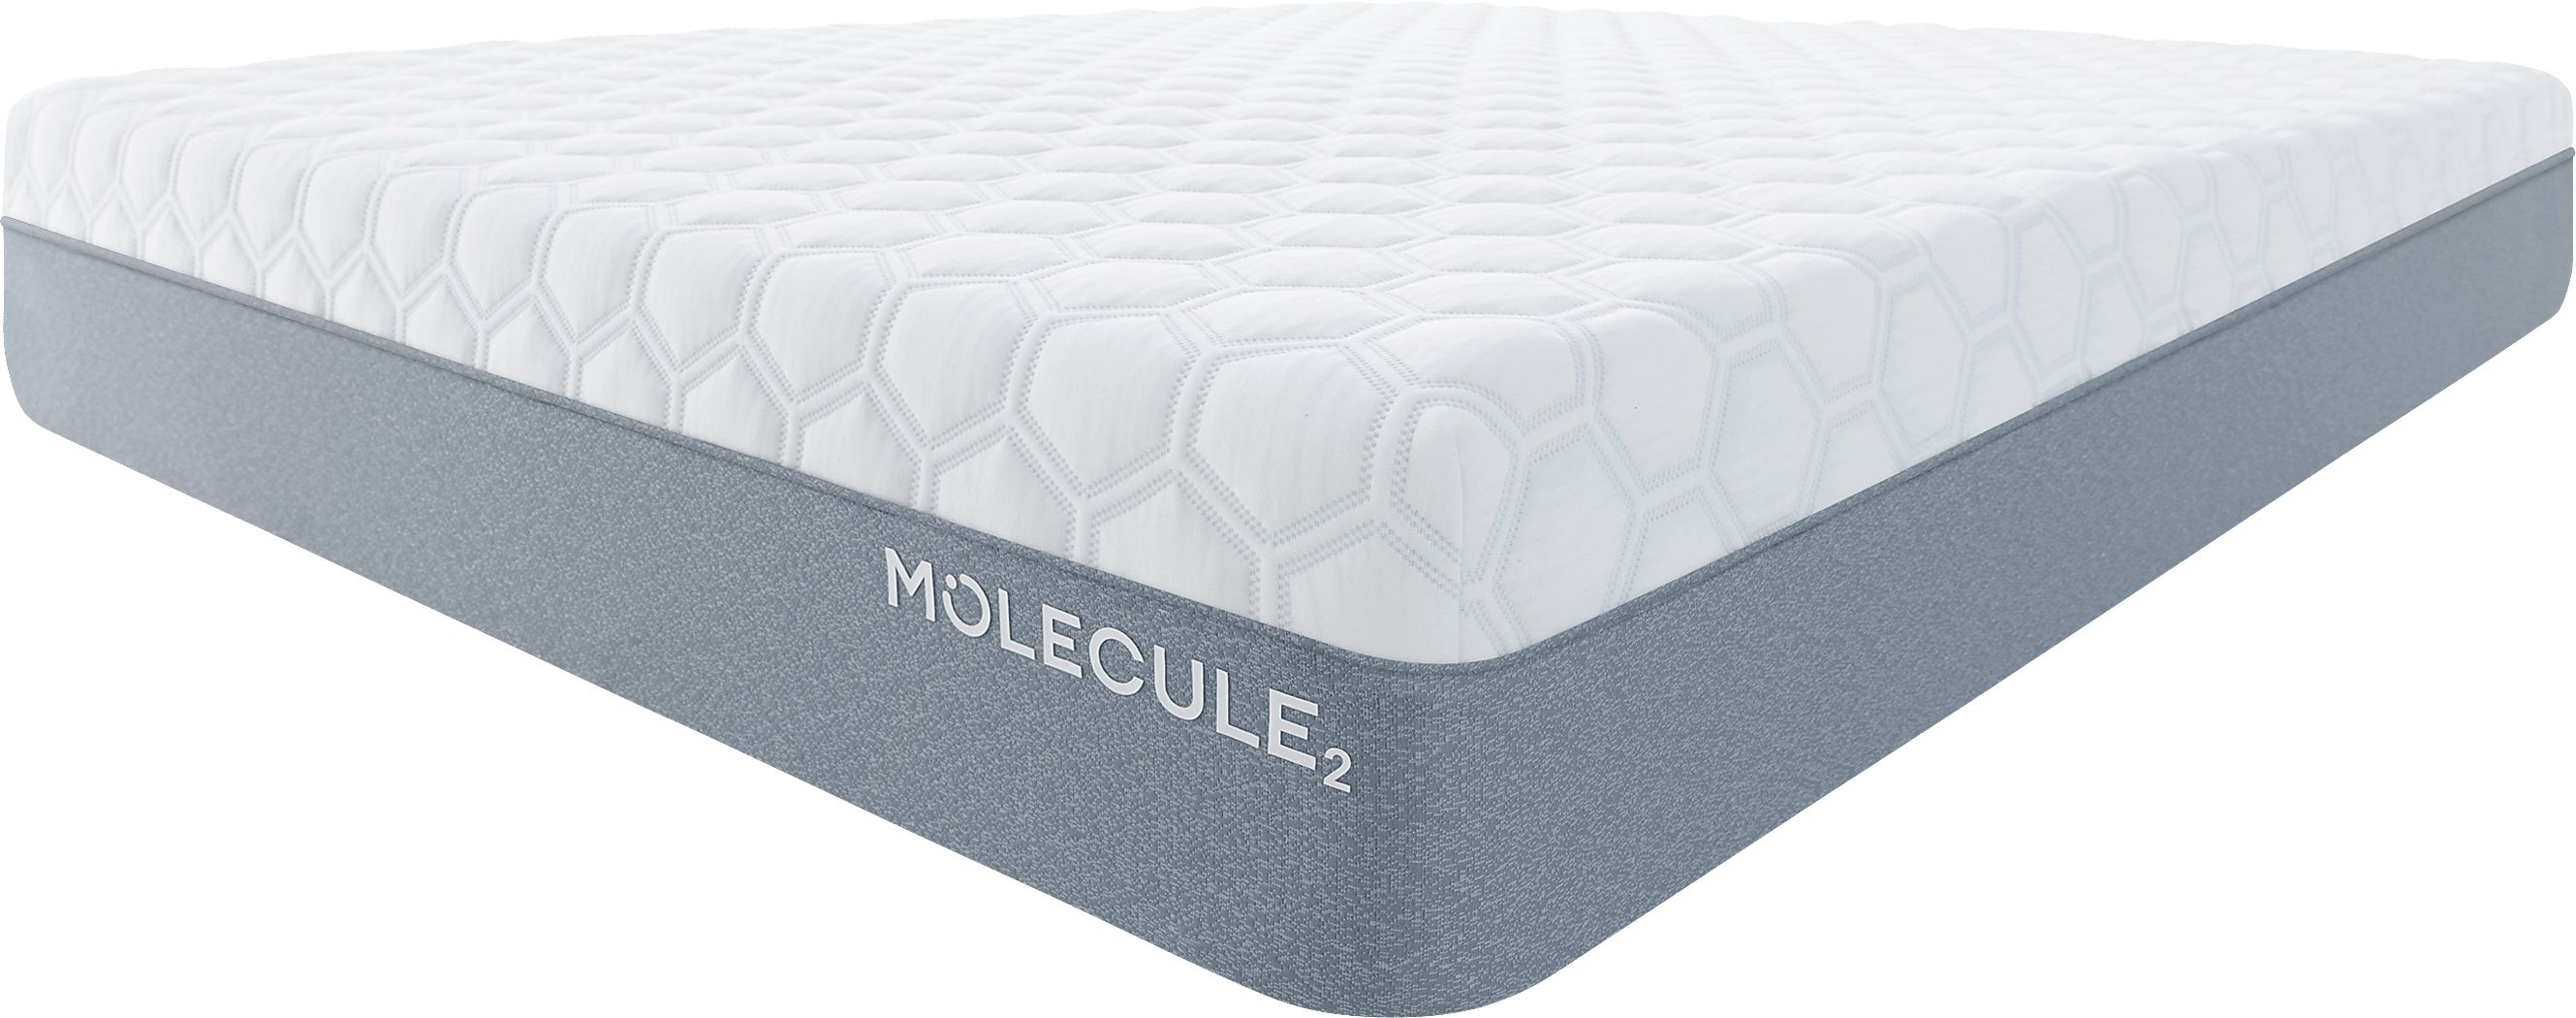 molecule 2 airtec queen mattress with microban